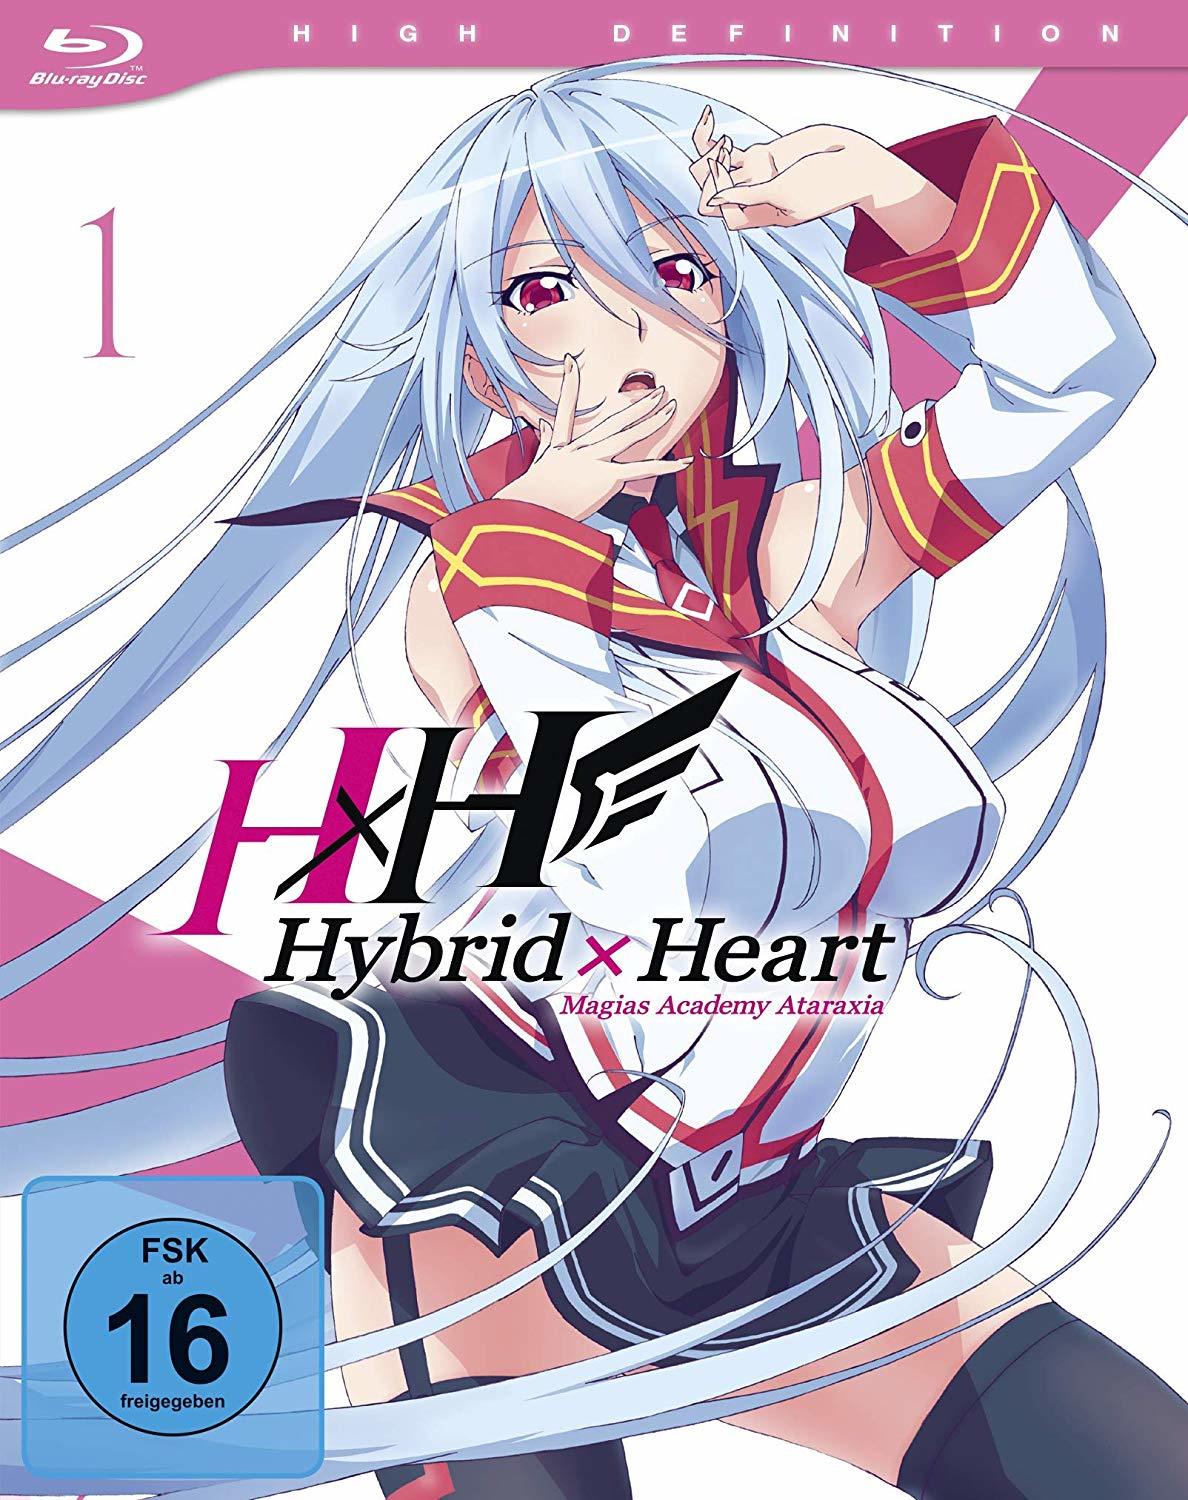 Hybrid × Heart Magias Academy Ataraxia - Wikipedia